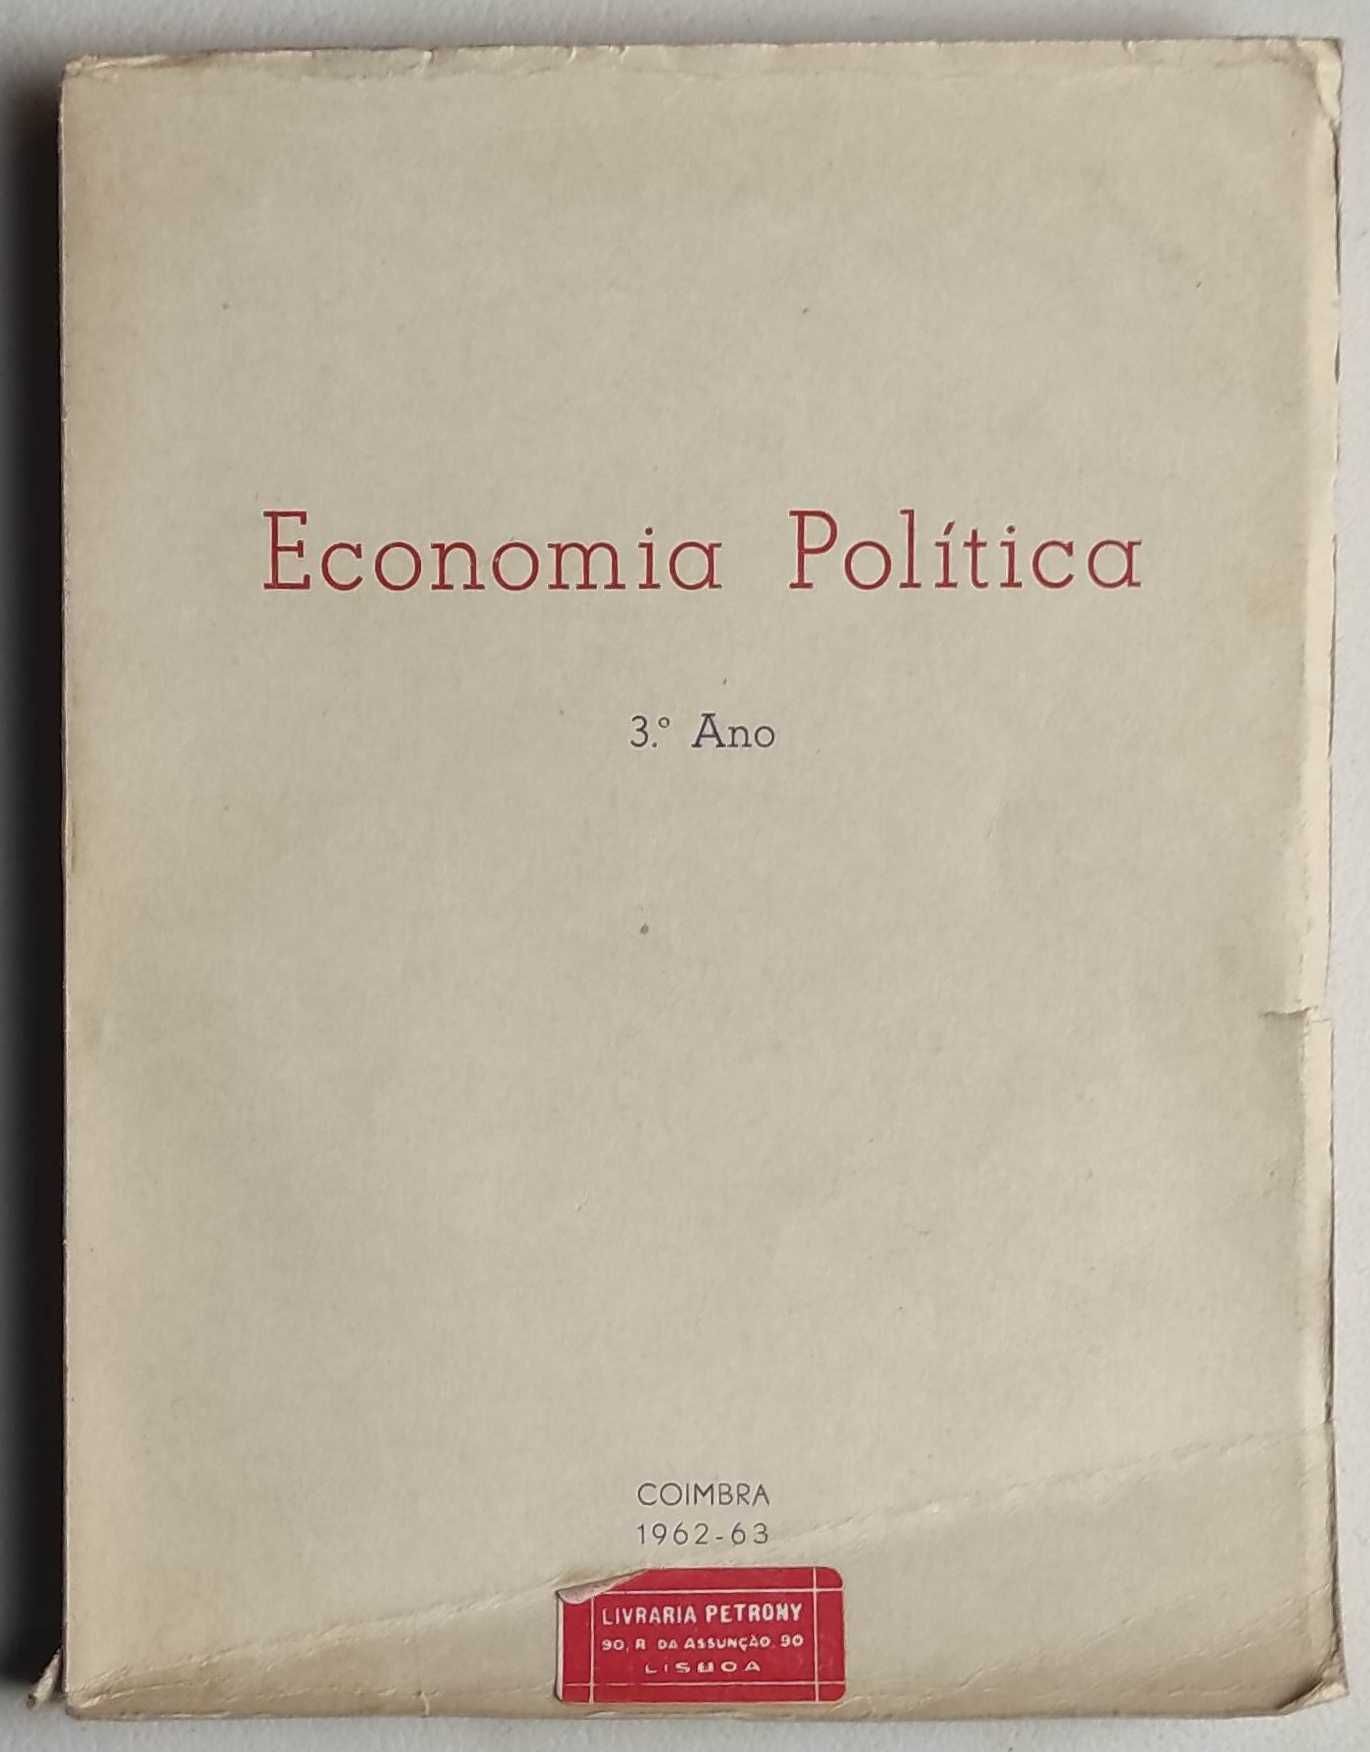 E1 - Livro - Economia Politica - 3ºAno